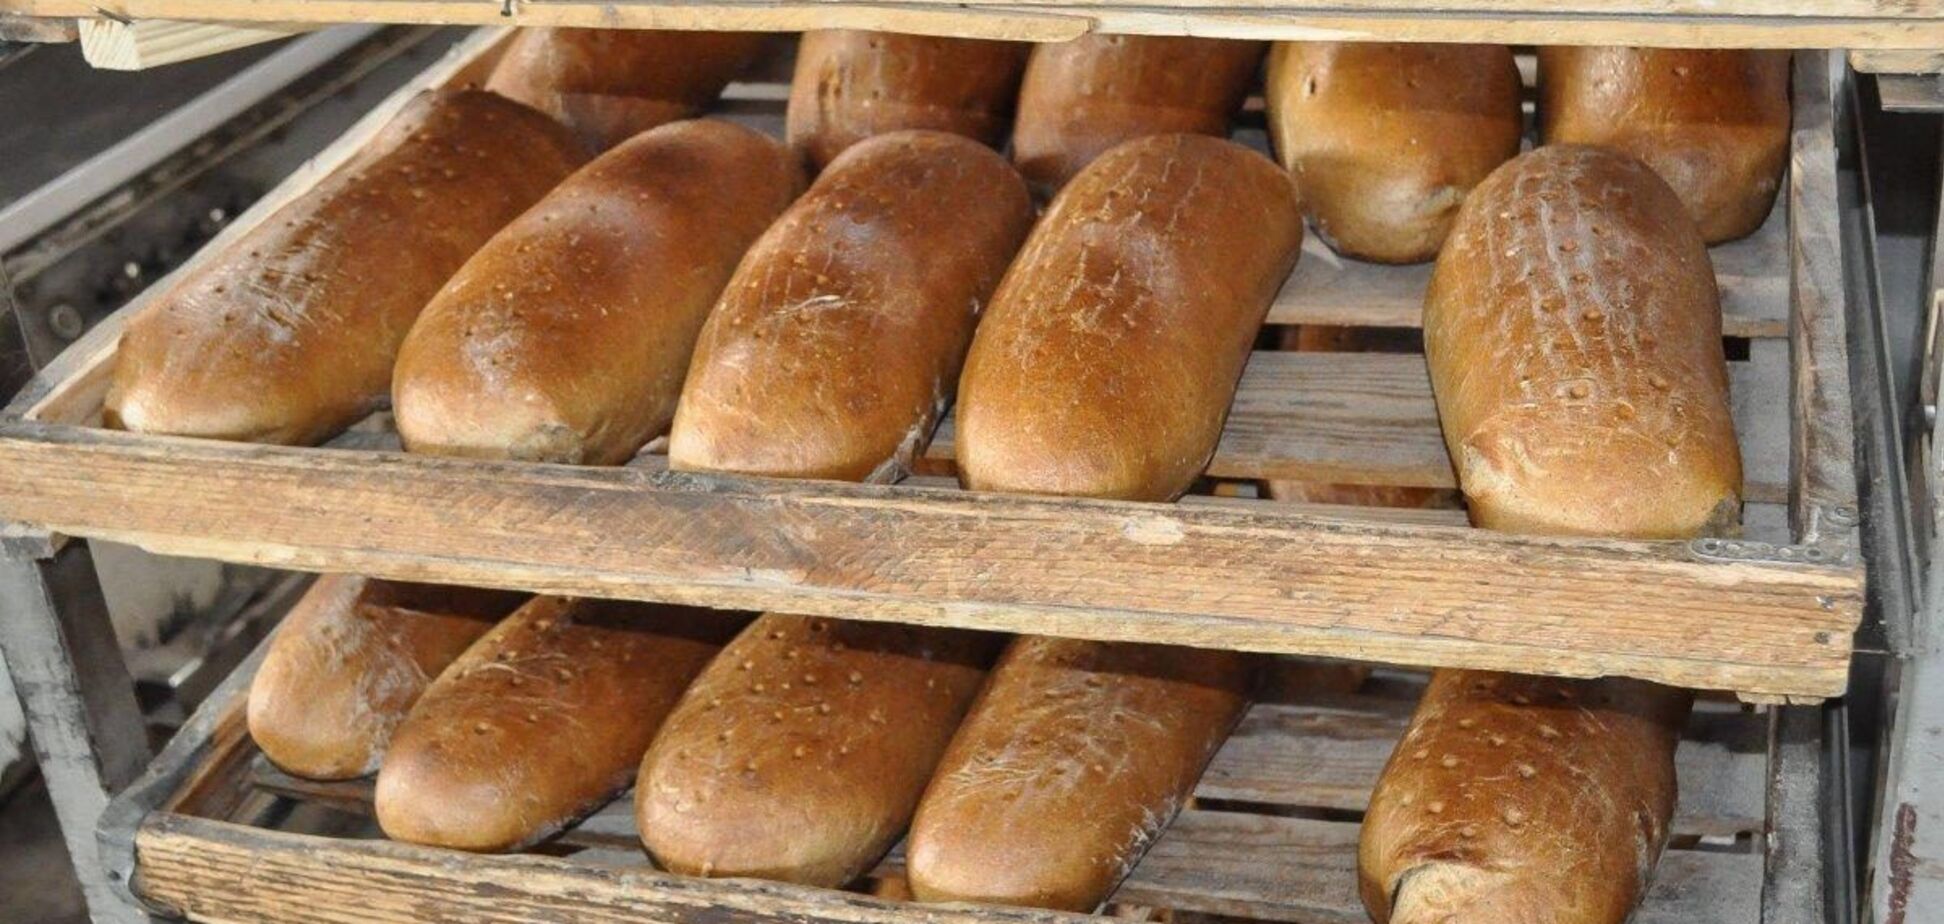 У виробників хліба катастрофа, в Україні може повторитись 'казахстанський сценарій', – голова 'Укрхлібпрому'